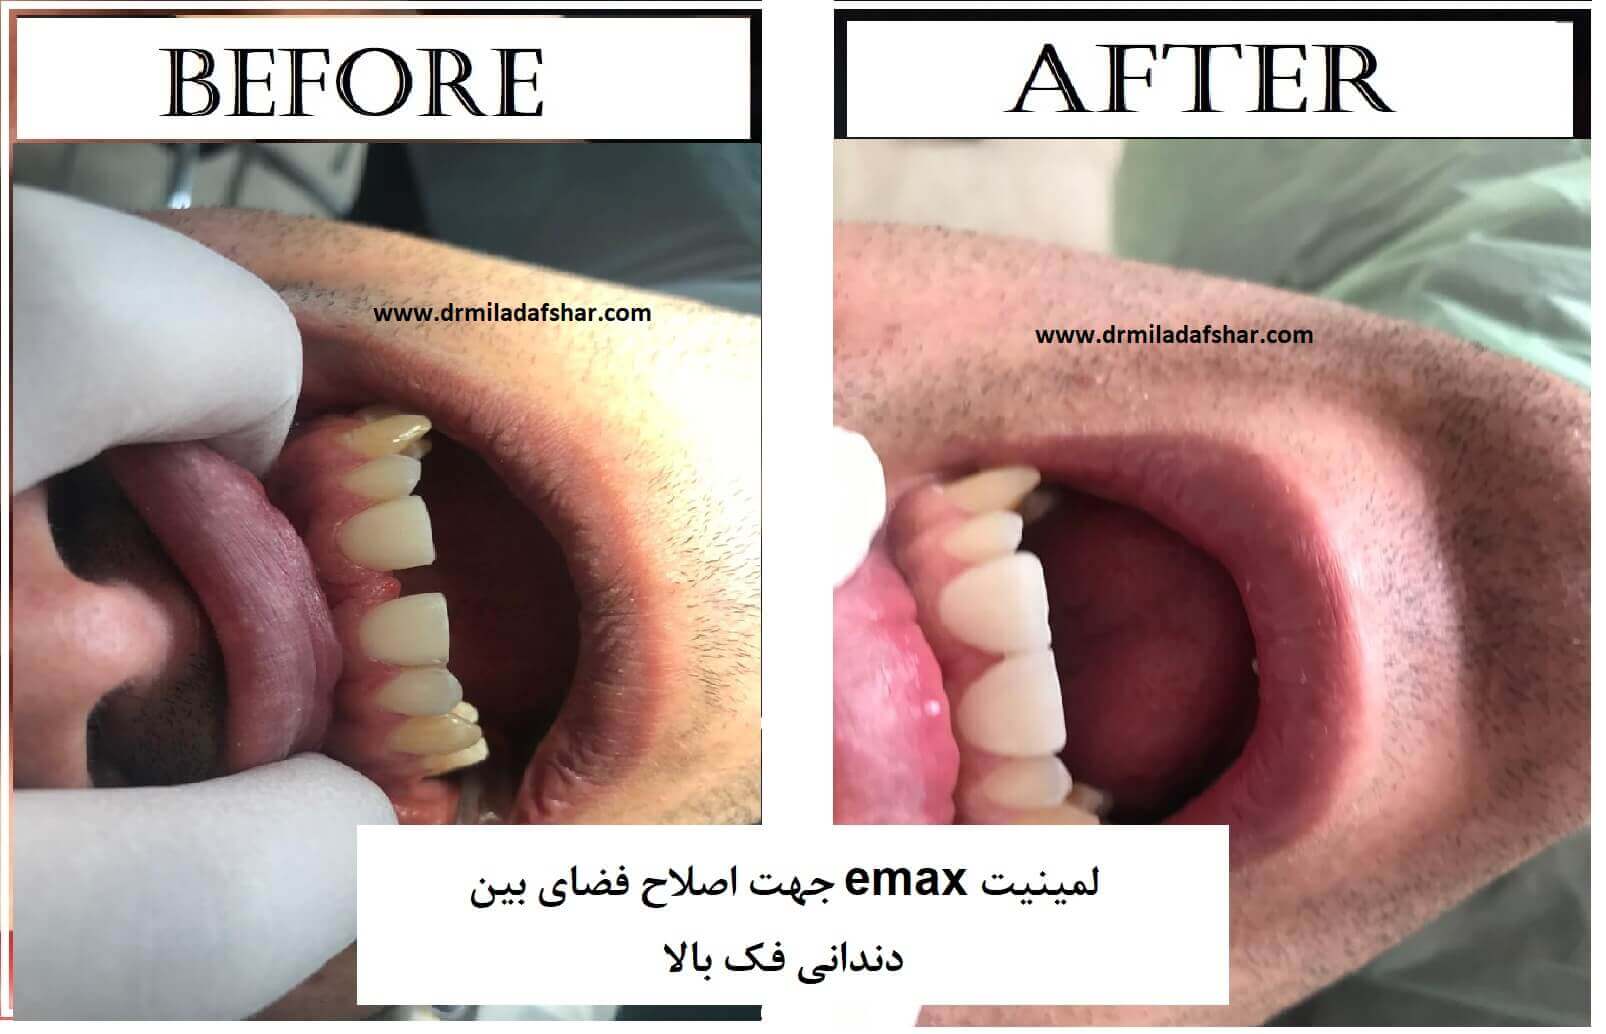 قبل و بعد از رفع فاصله بین دندان ها